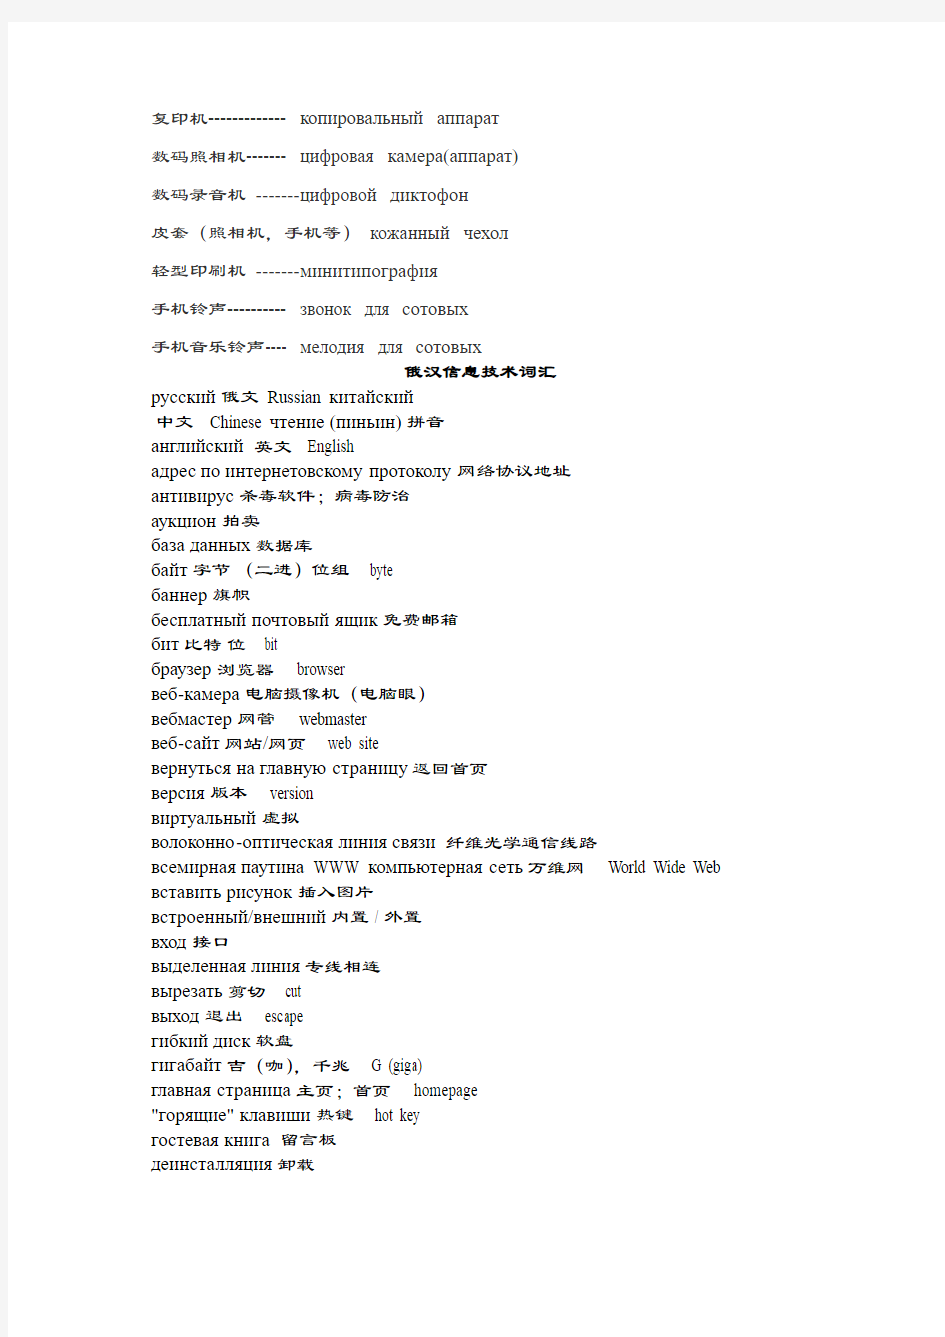 俄语计算机词汇用语